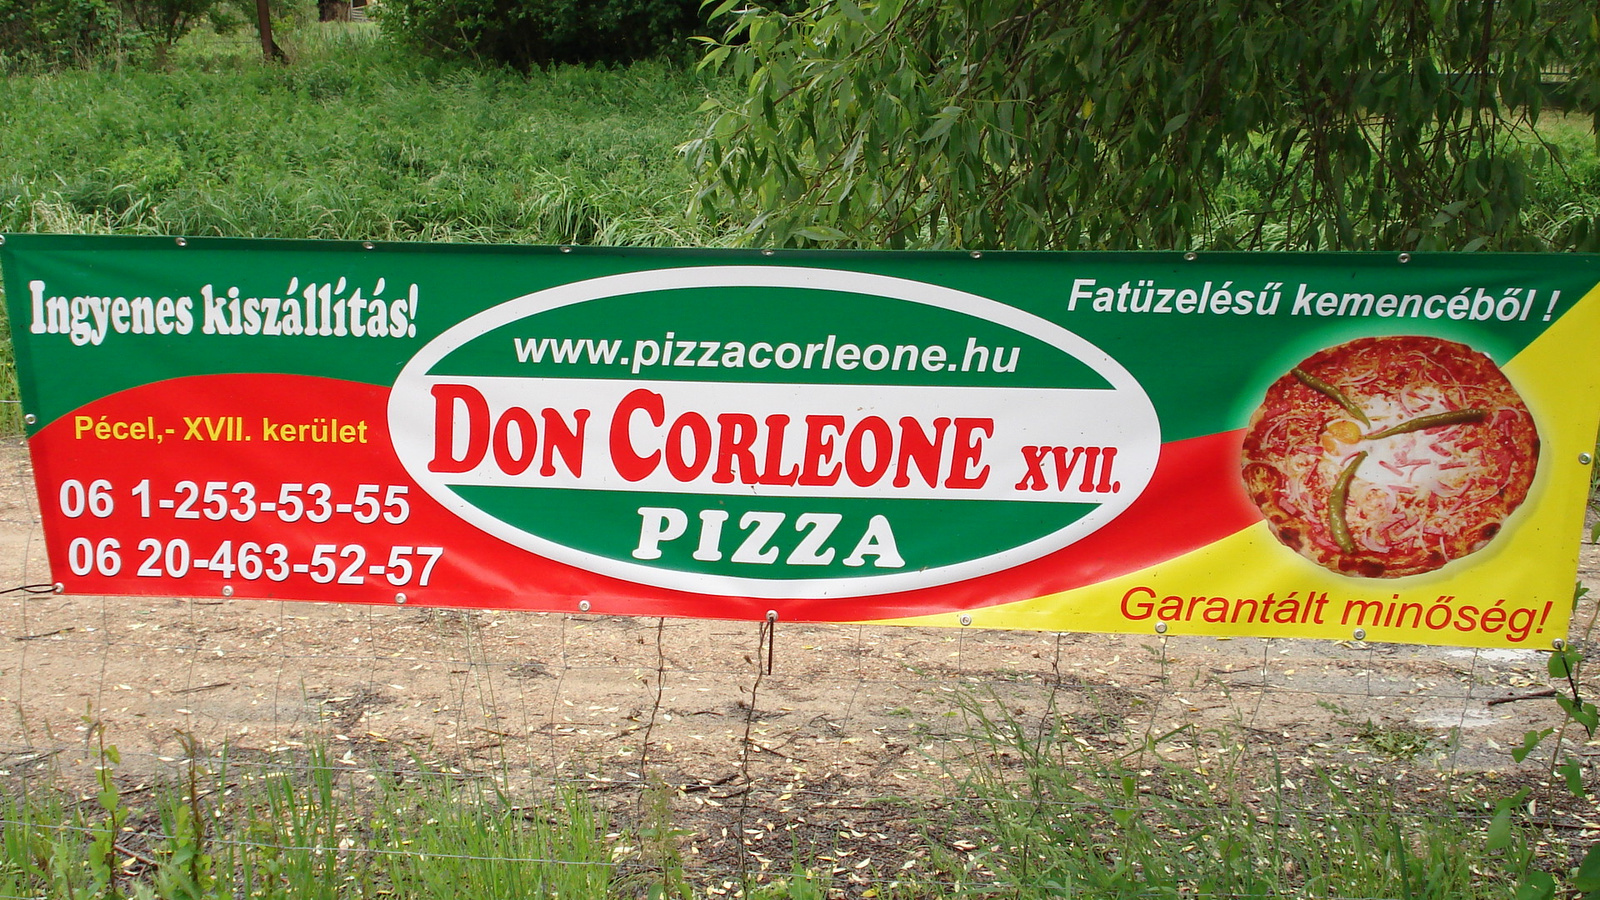 Sponsor 01 <a href="http://www.pizzacorlone.hu" rel="external">w